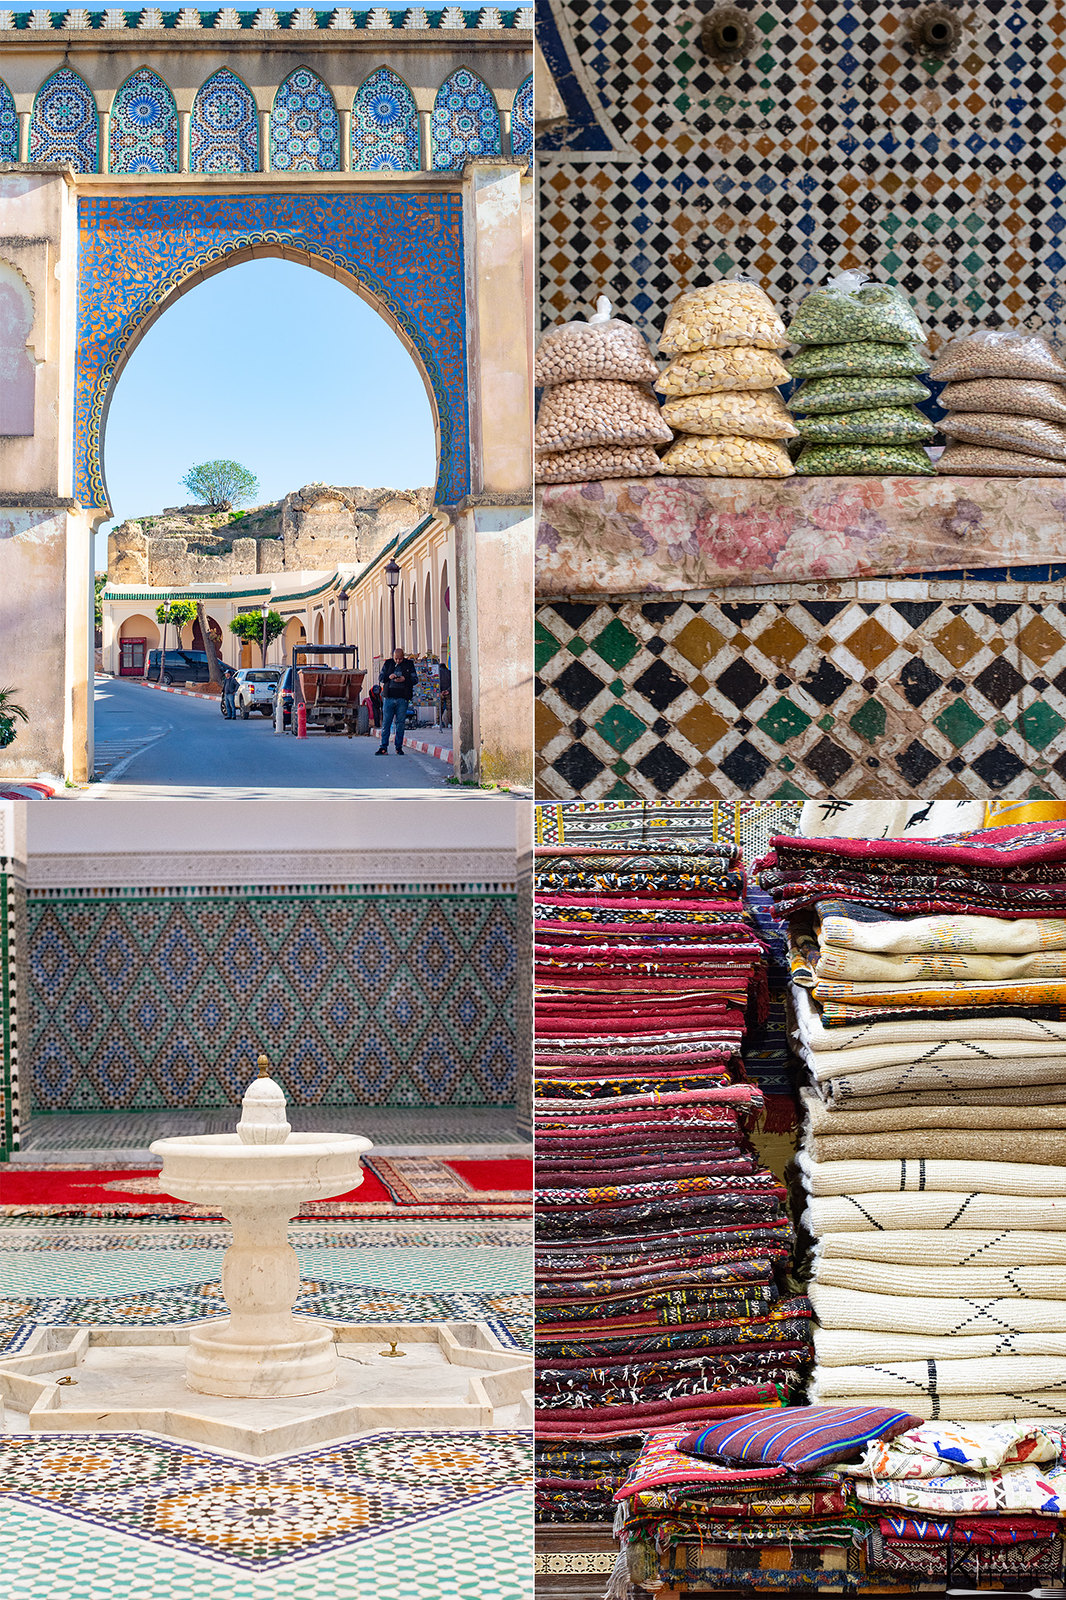 Marocco, Maroc, meknes, mausoleo, porte, viaggi, travel maroc, marocco on tour